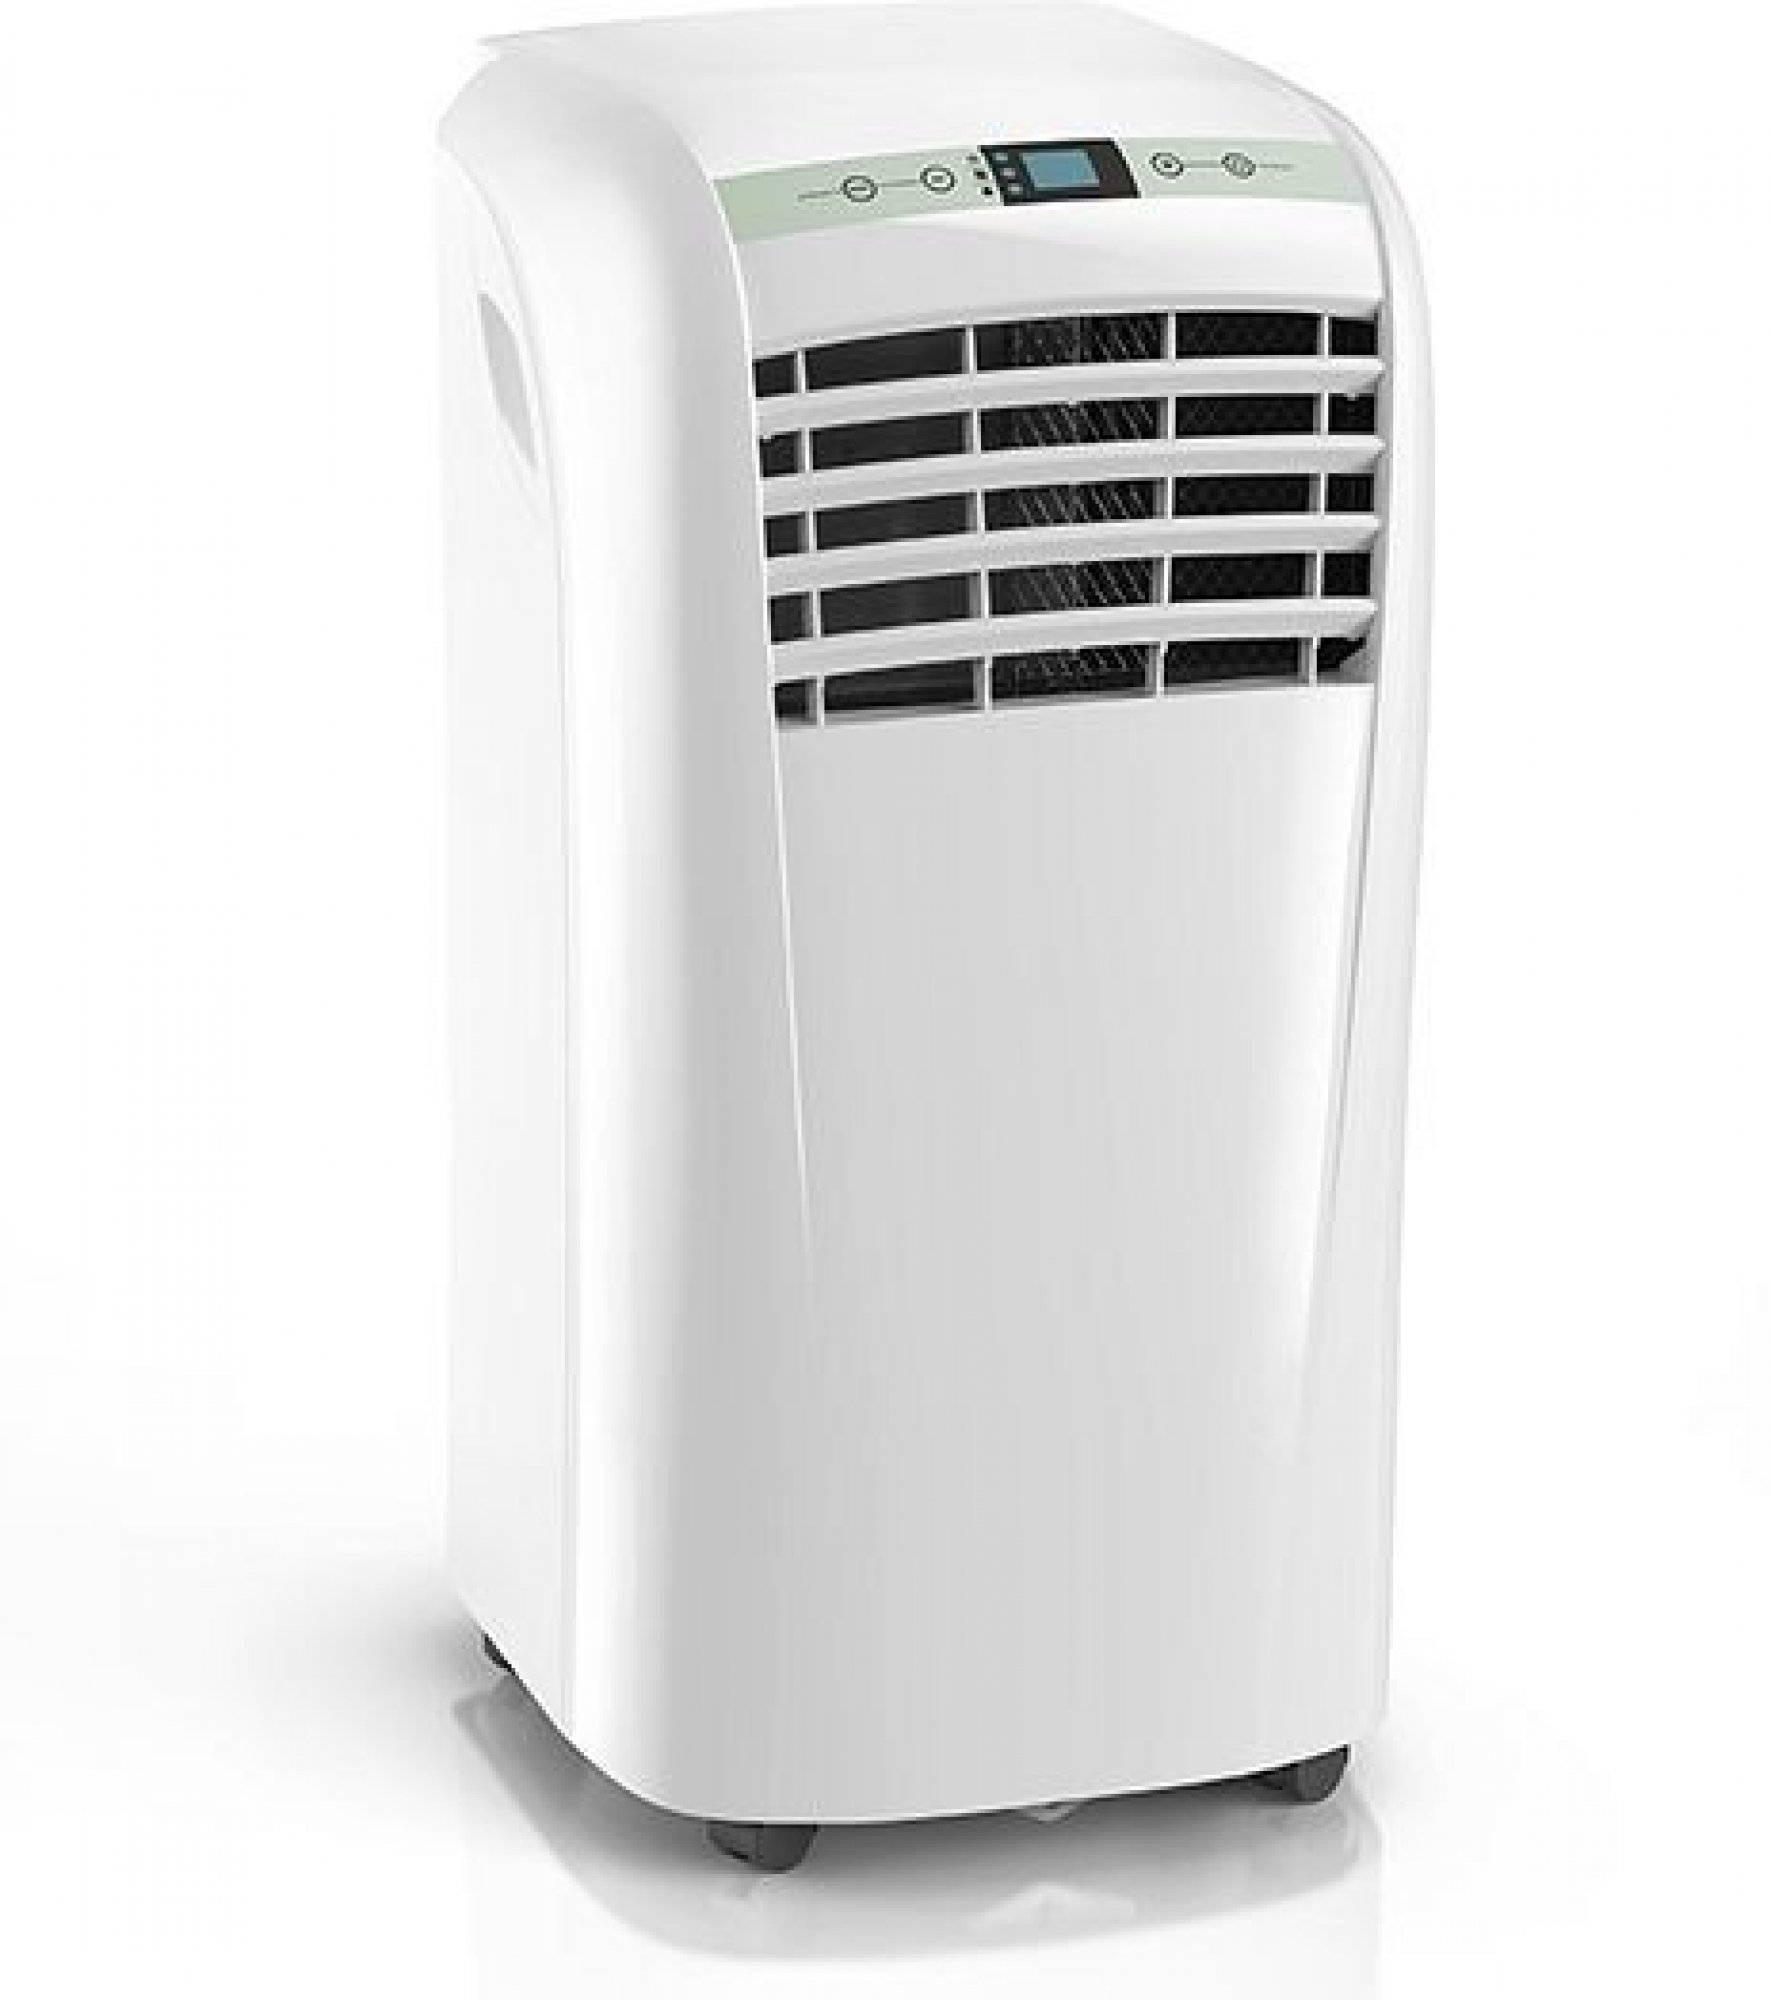 Mobilní klimatizace Compact 8P / chladící výkon 2100 W / 8000 BTU / do 26 m² / odvlhčovač / bílá / ZÁNOVNÍ